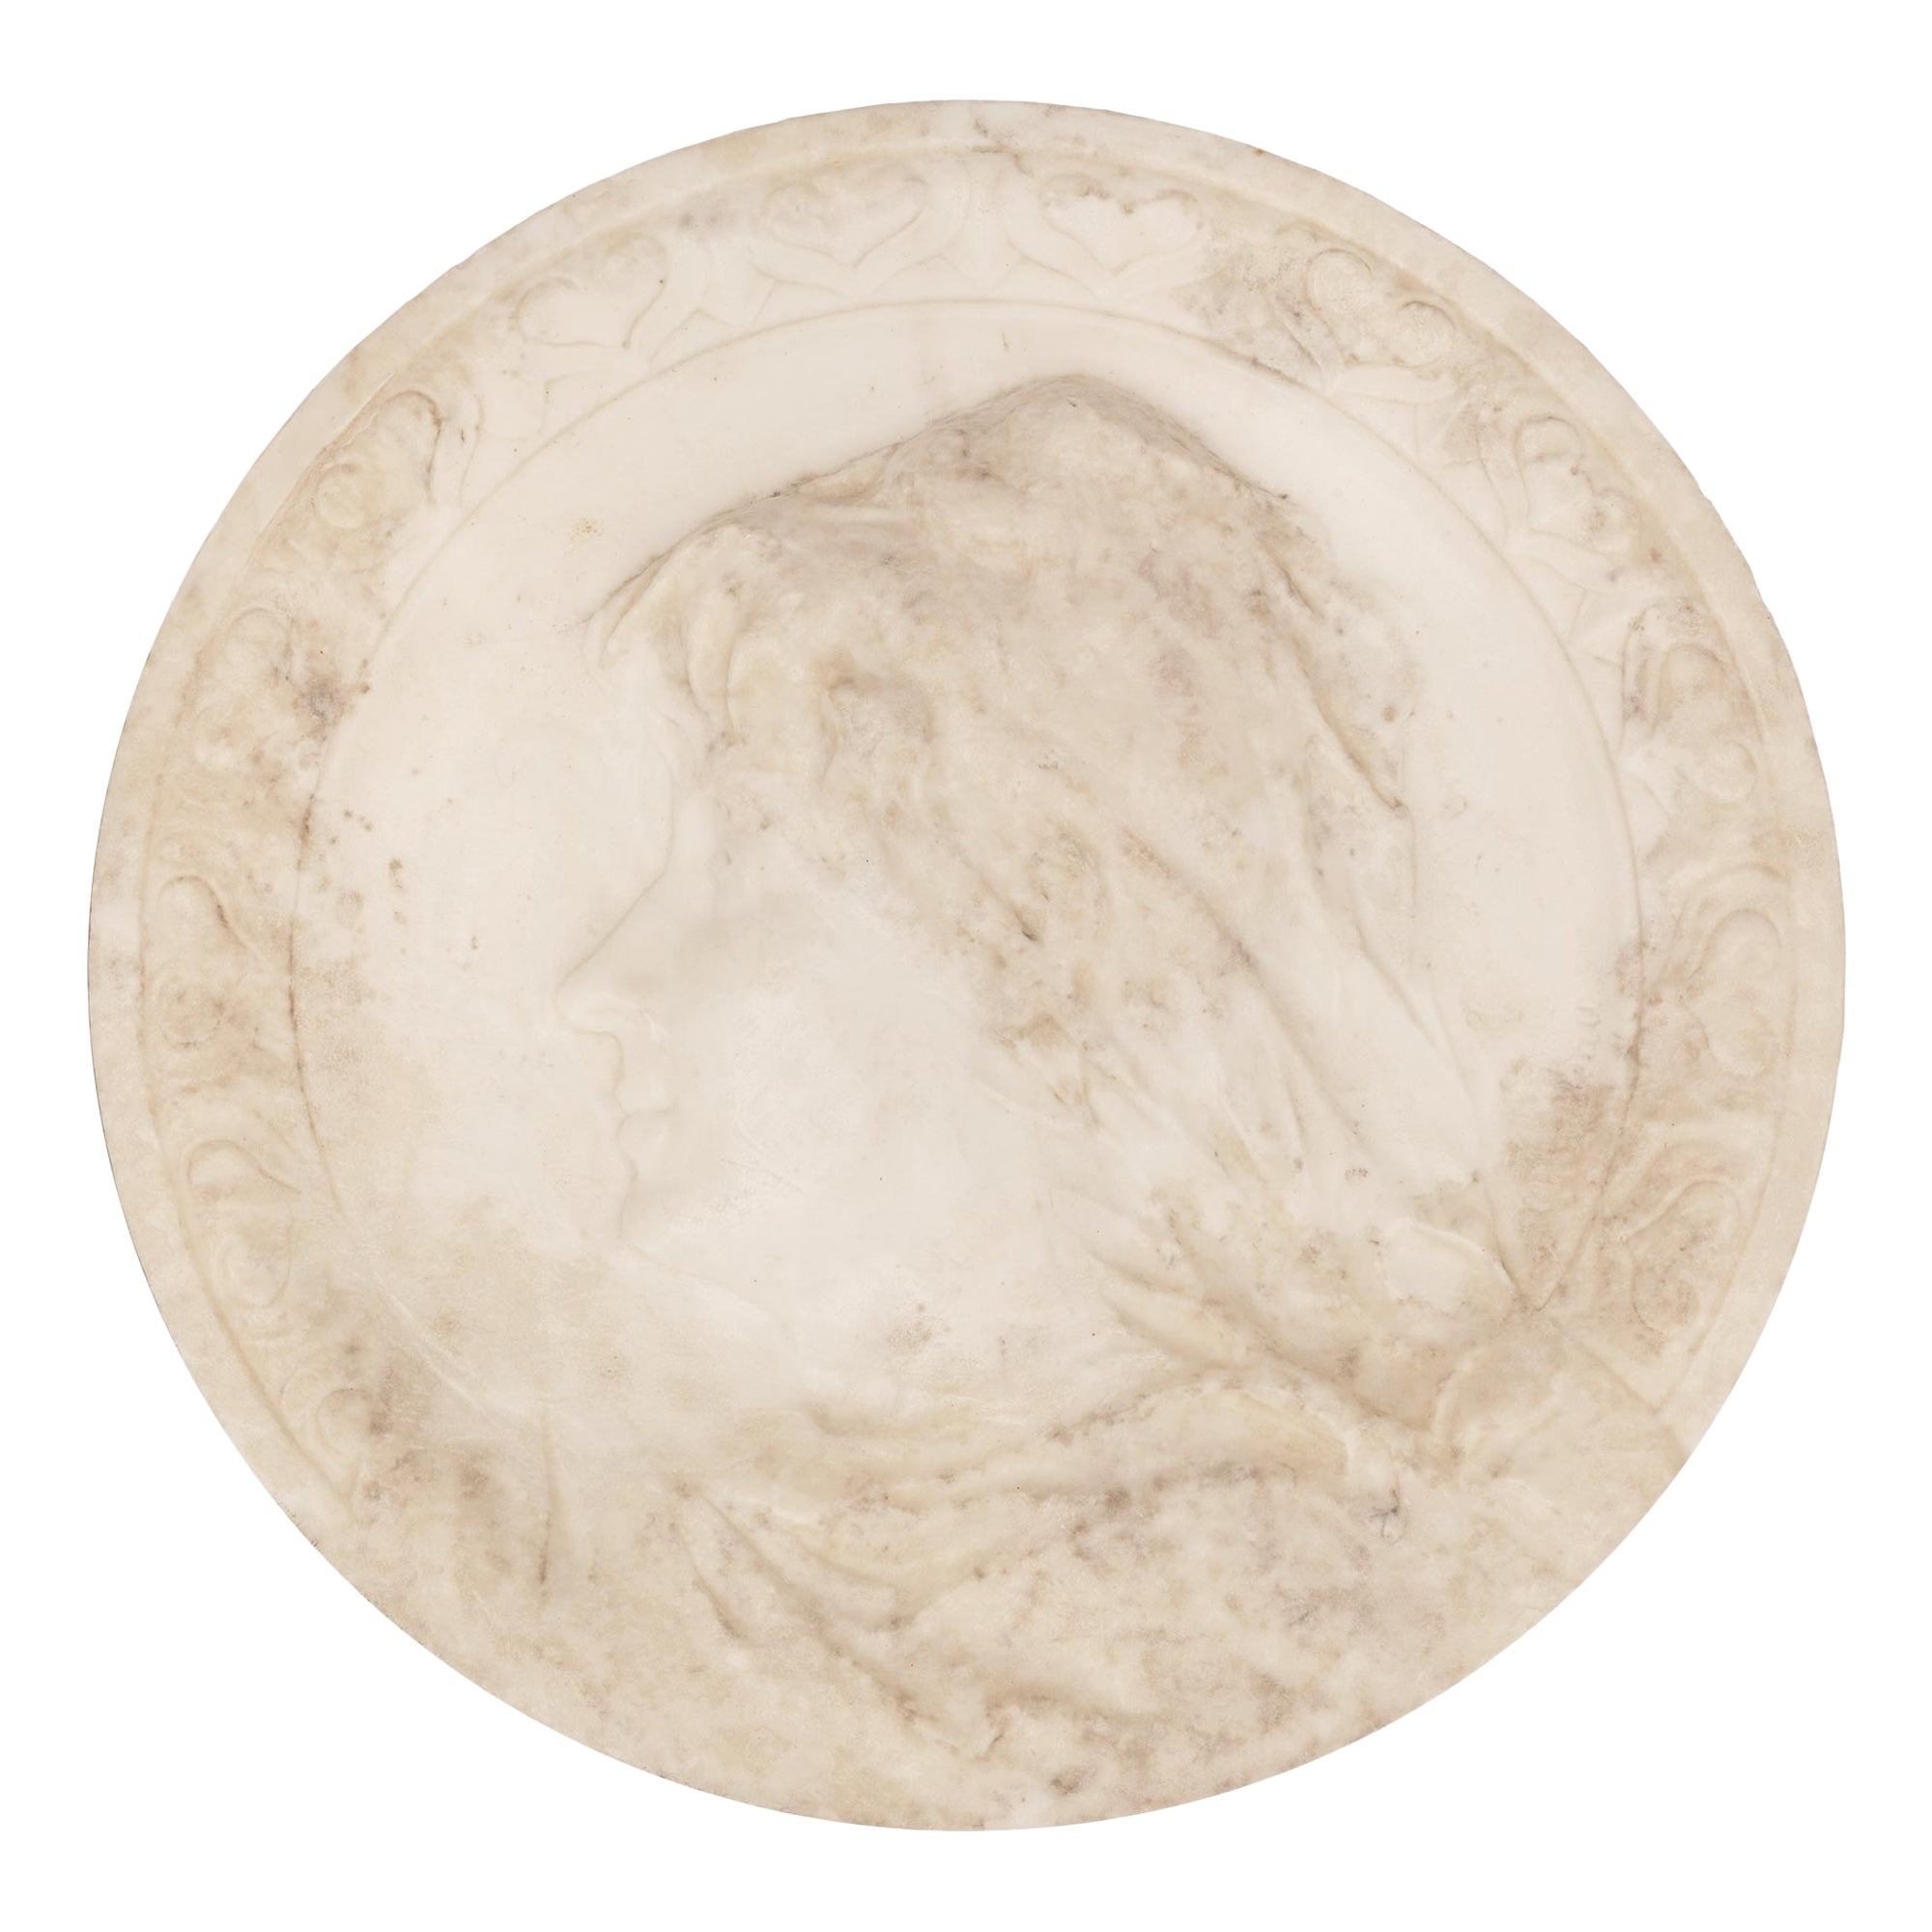 Reliefplakette aus weißem Carrara-Marmor aus dem 19. Jahrhundert